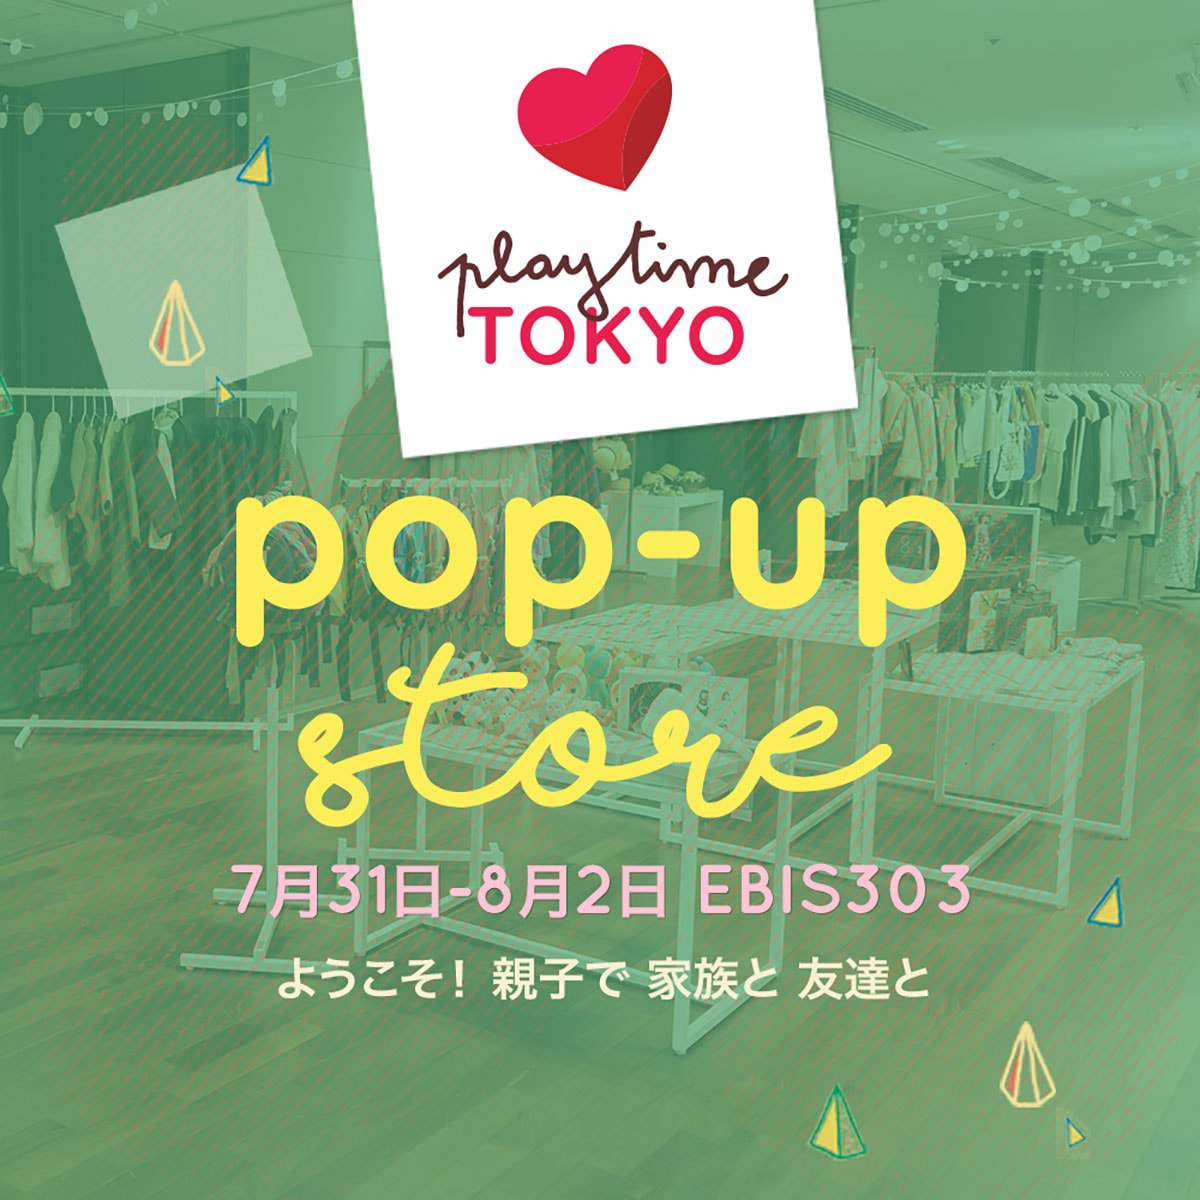 インターナショナルなファッション展示会「プレイタイム東京」にて一般参加できるPOP UP SHOPとワークショップを開催！